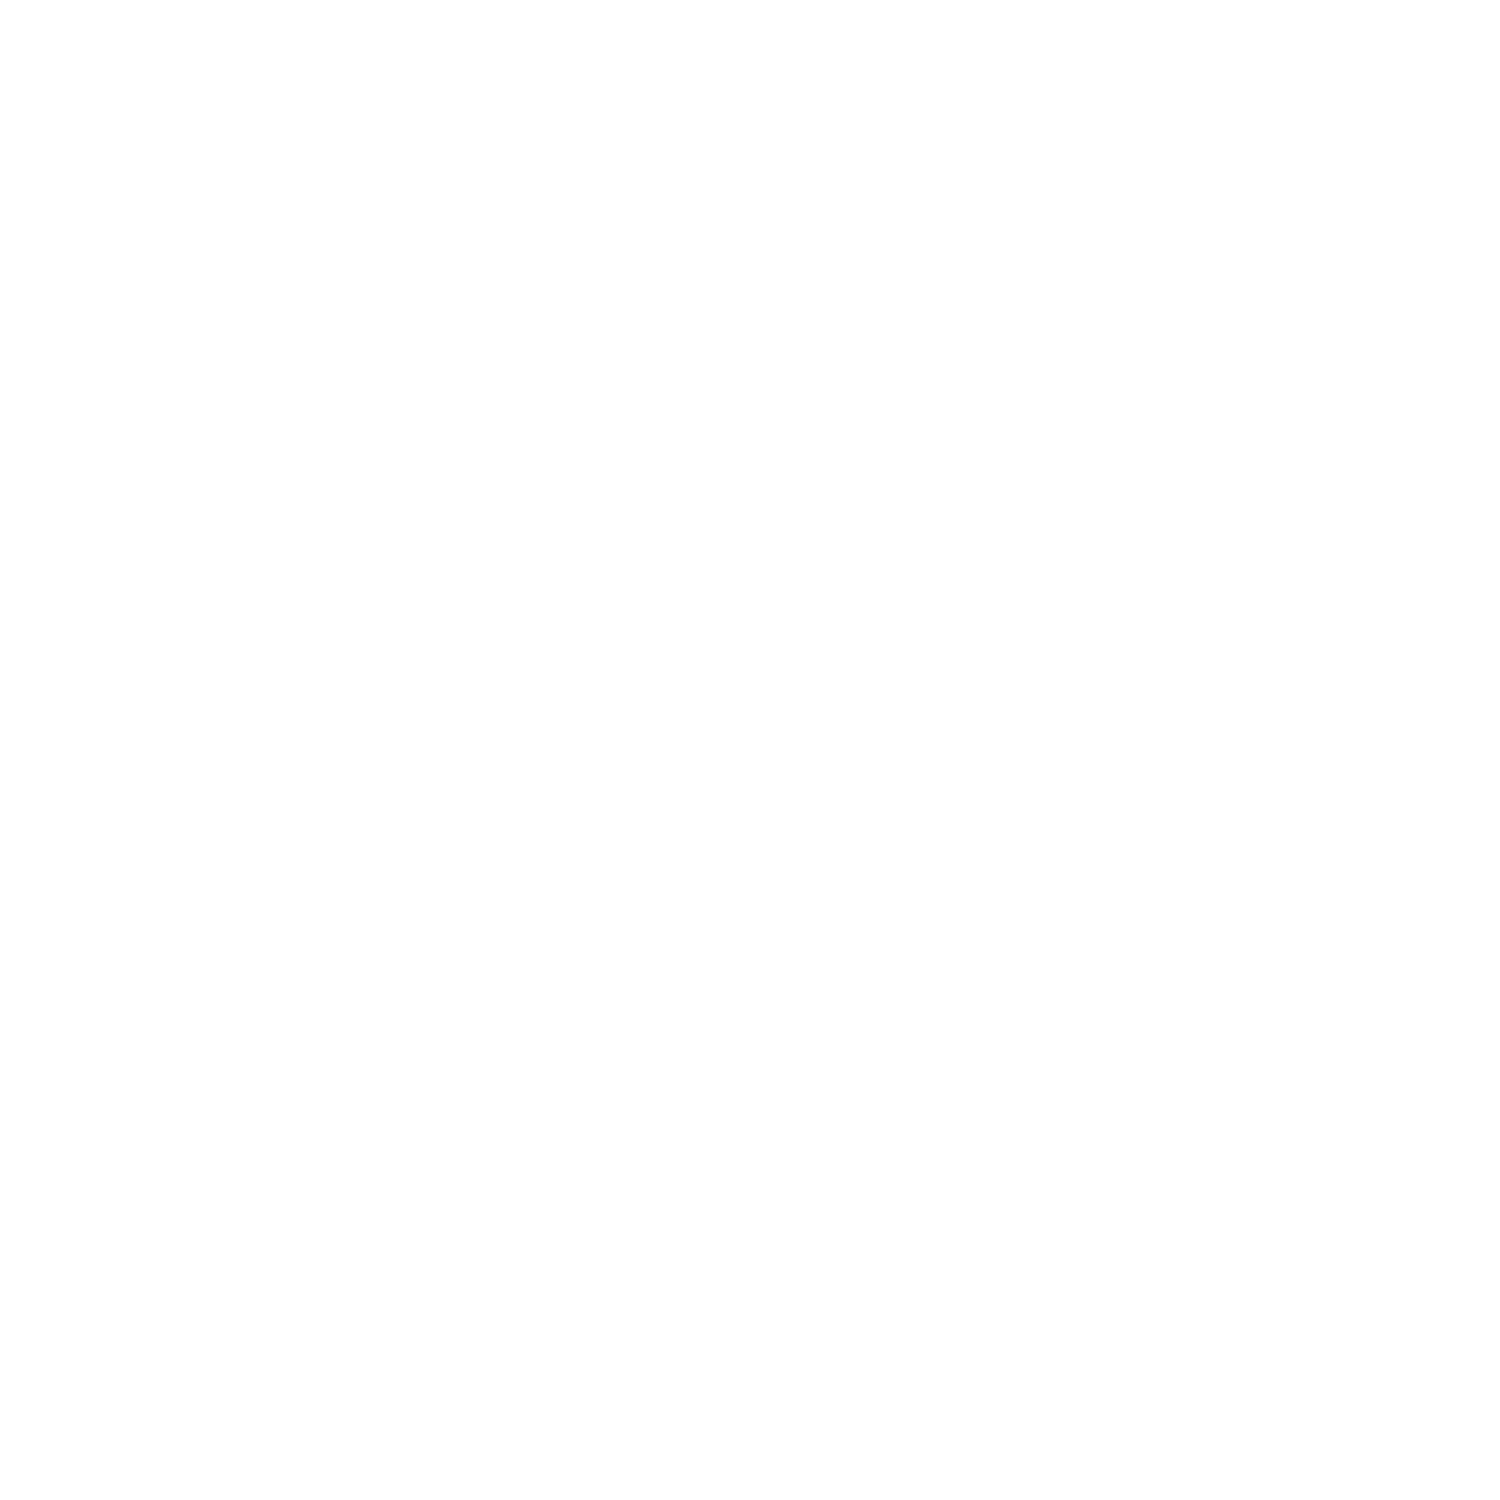 Whitley Electric Ltd